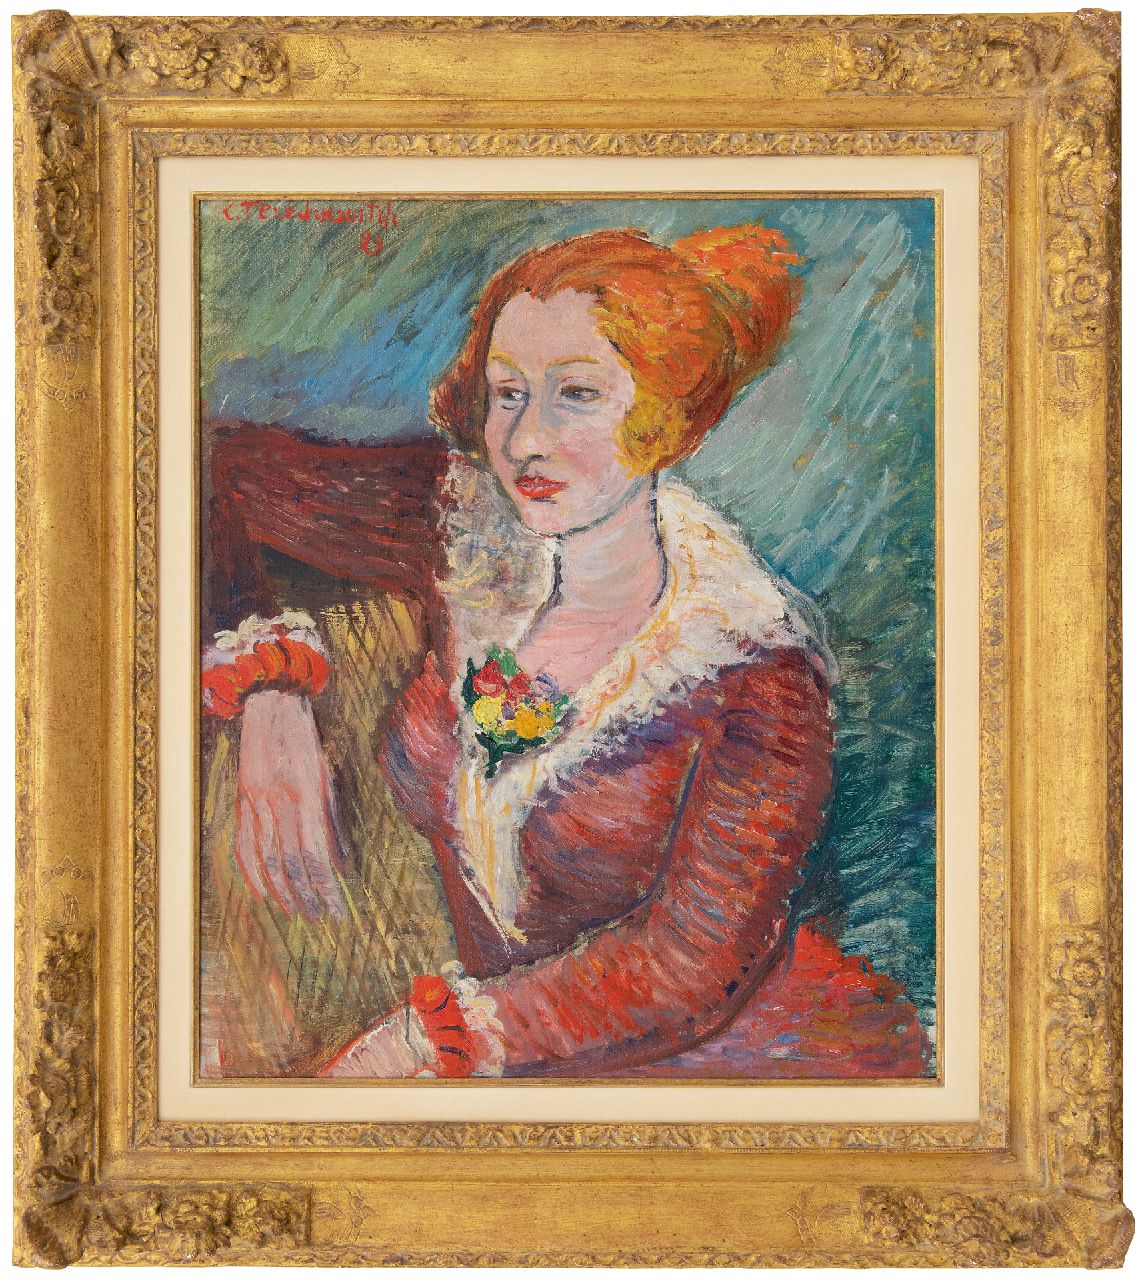 Terechkovitch K.A.  | 'Kostia' Andreevich Terechkovitch | Schilderijen te koop aangeboden | Jonge vrouw in rode jurk, olieverf op doek 60,5 x 50,2 cm, gesigneerd linksboven en gedateerd '29